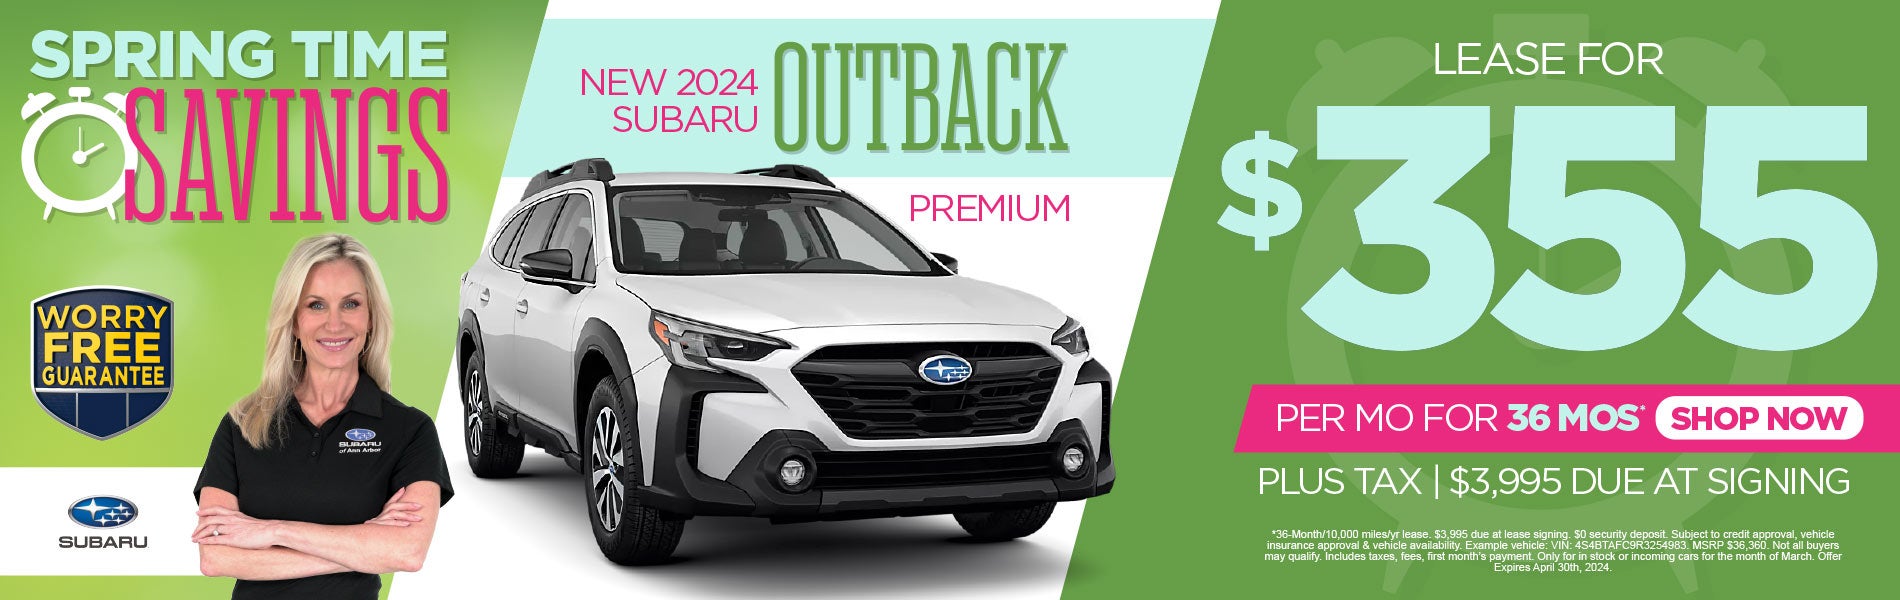 New 2024 Subaru Outback Premium lease for $355/Mo*